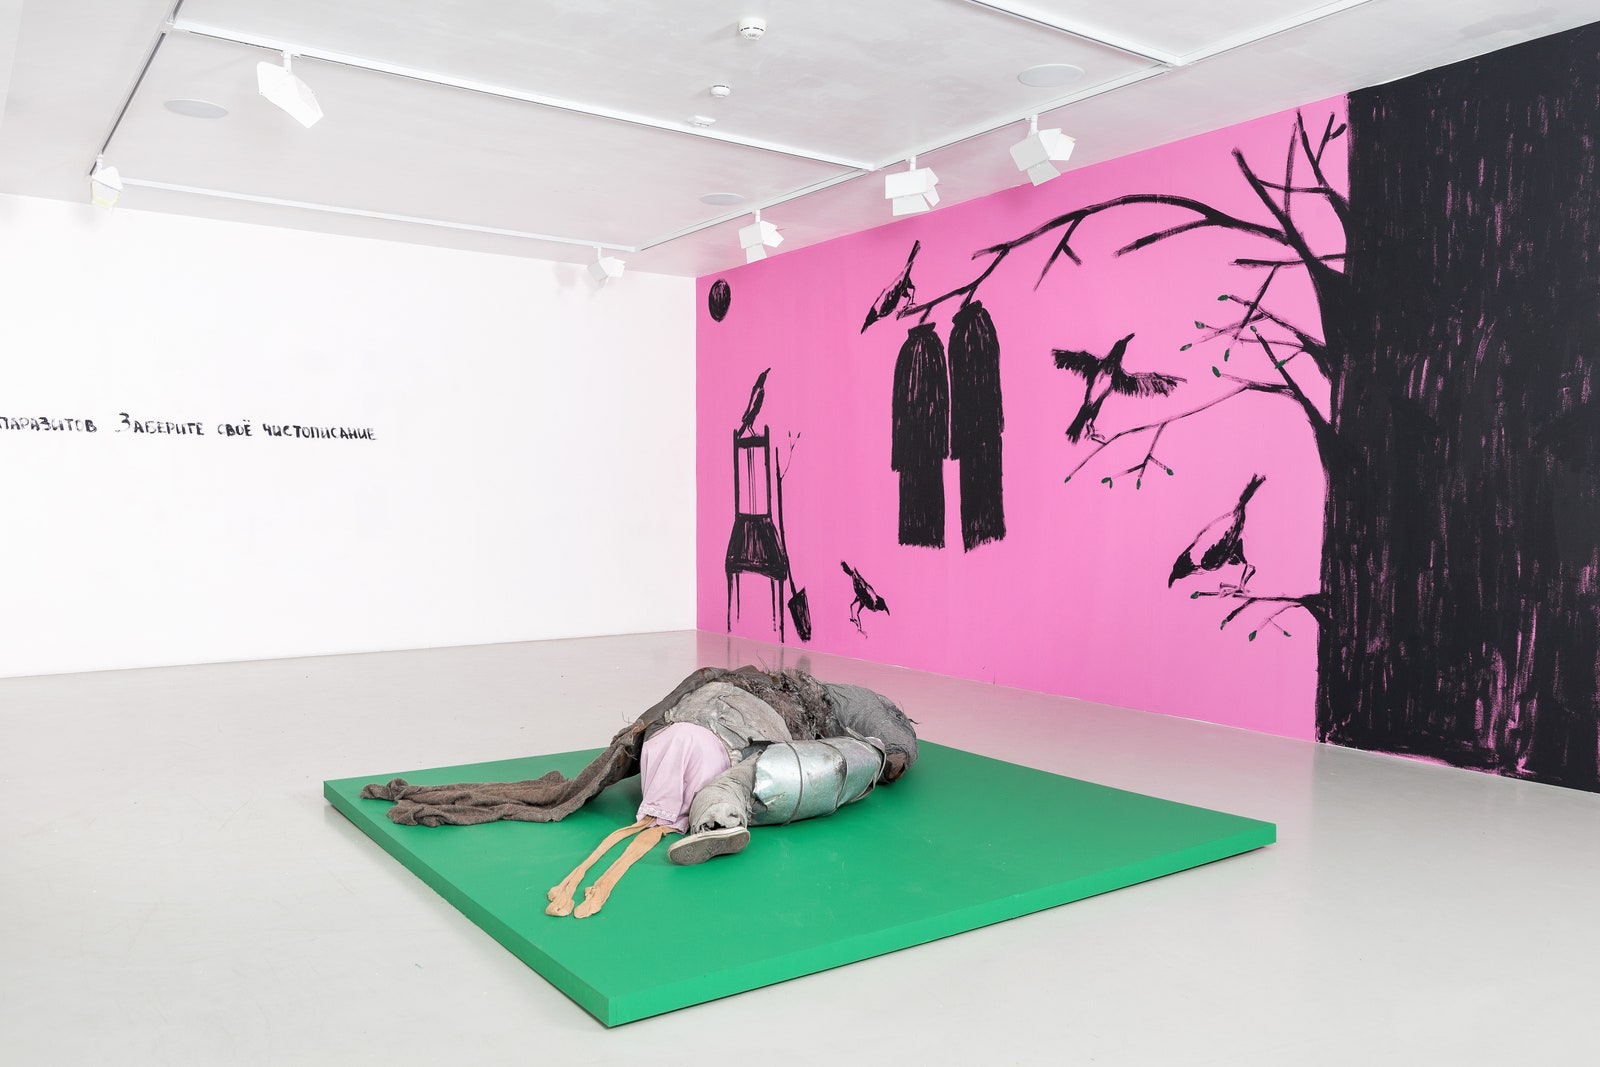 “Превращение как форма сопротивления” персональная выставка Хаима Сокола в СанктПетербурге